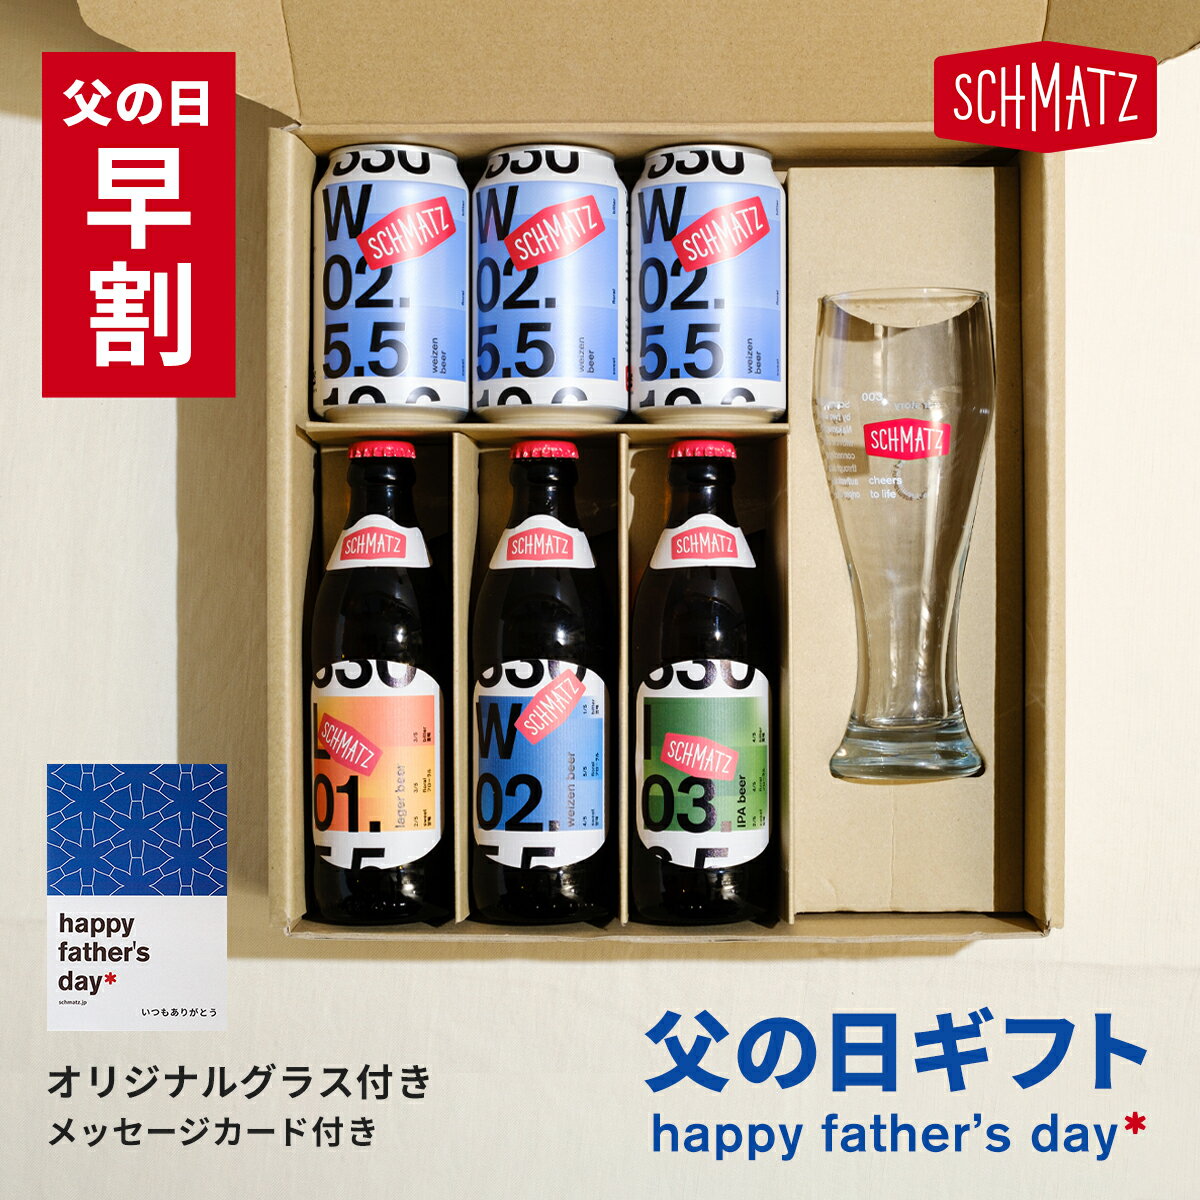 【Happy Father's Day！！！】 今年の父の日はシュマッツの特別なビールに想いをのせて、大切な方にビールを贈りませんか お酒が好きなお父さんへのギフトに、いつもとは違う特別なものを贈りたいという方にむけて 【Schmatz 父の日ギフト】をご用意しました！ 限定のSchmatzグラスとメッセージカードを付けて、 オリジナルBoxでお届けします 美味しいビールに感謝の気持ちを乗せて、大切な人の元へ届けませんか？ ビール好きなお父さんに贈るならこれ！ 【Schmatz オリジナルミックス 3本 ＋ weizen缶 3本】 シュマッツのオリジナルビール「ラガー・ヴァイツェン・IPA」にシュマッツ新定番商品のweizen缶がセットになりました。 ドイツの伝統技術とこだわりがたっぷり詰まった味わい、 最高品質の素材が生み出すビール本来の純粋な旨味に酔いしれてください 【梱包について】 *オリジナルBoxでお届けします *オリジナルBoxに直接、伝票を貼らないようBoxを紙袋にいれてお届けします *ご注文いただいたお客様のご住所と配送先のご住所が異なる場合は、自動的にギフト対応となるため納品書等の金額の分かるものはお入れしておりません 【配送について】 通常2-4日でお客様の元へお届けします *一部地域におきまして、発送の遅延、お届け停止が生じております 【どんなビール？】 ・シュマッツの3種類ビールをお得に味わえる ・かわいいボックスで届く、ビール好きが喜ぶギフト ・他では手に入らない、オリジナルのドイツビール ・バイエルン州の家族ブルワリーで作り日本に直輸入 ・純粋令を守って原料は麦芽・ホップ・水・酵母のみ シュマッツの3種類のビール「ラガー」、「ヴァイツェン」と「I.P.A.」を2本ずつ飲み比べられるお得なセット。モルトのうまみを生かしたしっかりコクのあるラガー、バナナのような華やかな香りが特徴のヴァイツェン、そしてフルーティー＆ビターな味わいが楽しめるIPA。 普段味わえないような深みのある美味しいビールをお届けしております。是非、本場ドイツのクラフトビールをお試しください。 全国どこでも送料無料！ ■イベントなどにもぴったり 誕生日、結婚記念日、クリスマス、お歳暮、年越し、忘年会、新年会、年末年始、新年、バレンタインデー、ホワイトデー、母の日、父の日、成人の日、成人式、プレゼント、誕生日プレゼント、お土産、手土産、お返し、ギフト ■こんなシーンにもおすすめ 家飲み、宅飲み、ホームパーティー、ディナーパーティー、飲み会、女子会、オンライン飲み会、外飲み、お花見、キャンプ、BBQ、バーベキュー、アウトドア、テイスティング ・名称：シュマッツ ビール 3種 飲み比べセット ・内容量：330ml x 24本セット ・保存方法：冷暗所にて保管 ・原材料：水、小麦、大麦、ホップ ・アルコール度数：5.5％ - 6.5% ・配送タイプ：常温品 ※常温品と冷蔵品を同時に購入された場合、別々での配送となる場合があります事、あらかじめご了承ください。・販売者：カイザーキッチンビール株式会社 東京都目黒区上目黒1−22ー4　中目黒駅前ビル3F【沖縄への配送に関して】 当店では3,980円以上のお買い上げで送料無料とさせていただいておりますが、沖縄への配送のみ別途配送料を頂戴しております。 あらかじめご了承のほどよろしくお願い申し上げます。Schmatz 父の日ギフト 期間限定販売中 ギフト特典 ●Schmatz オリジナルグラス（ドイツ製） ●オリジナルメッセージカード付き ●日時指定可！